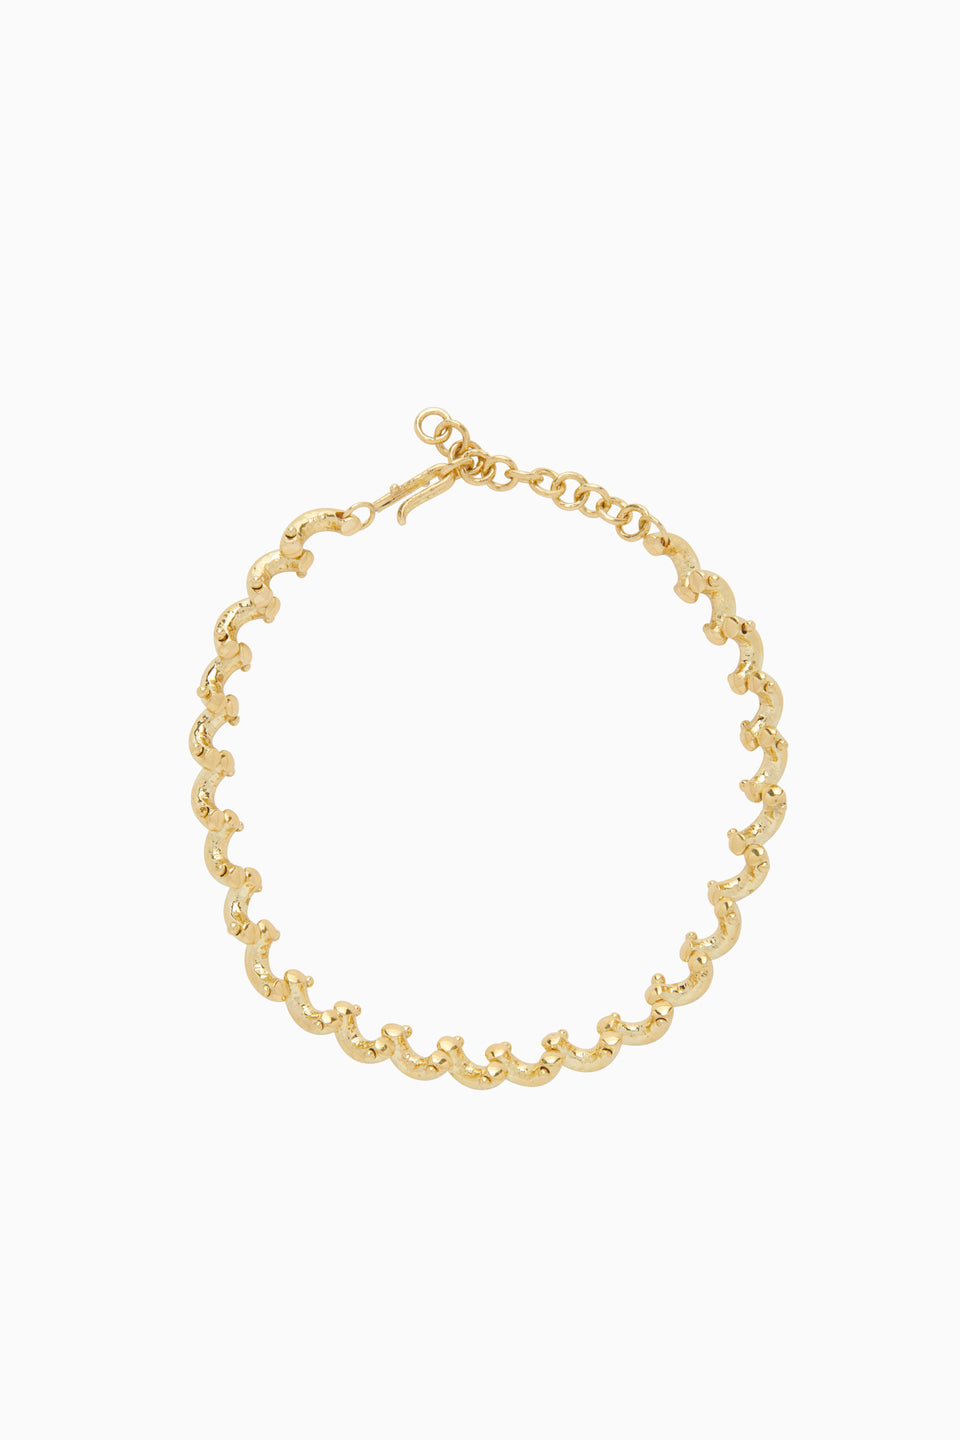 Vine Chain Necklace - Brass